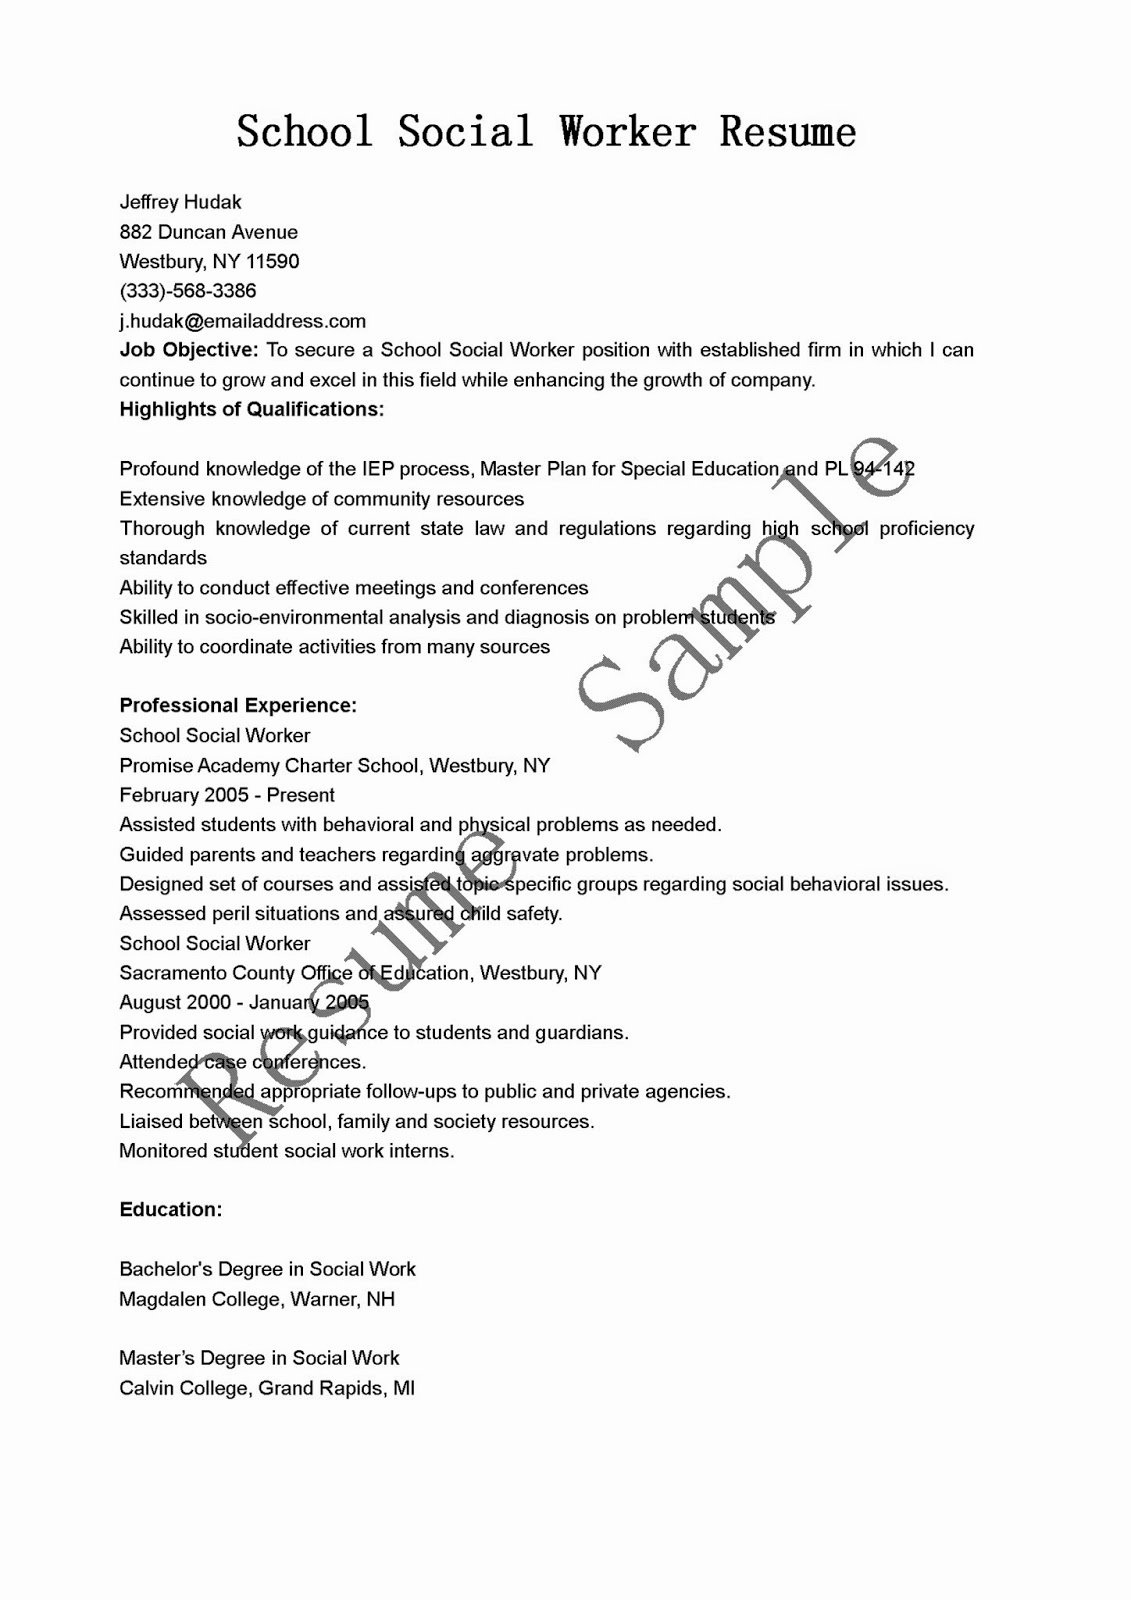 Resume Samples School social Worker Resume Sample